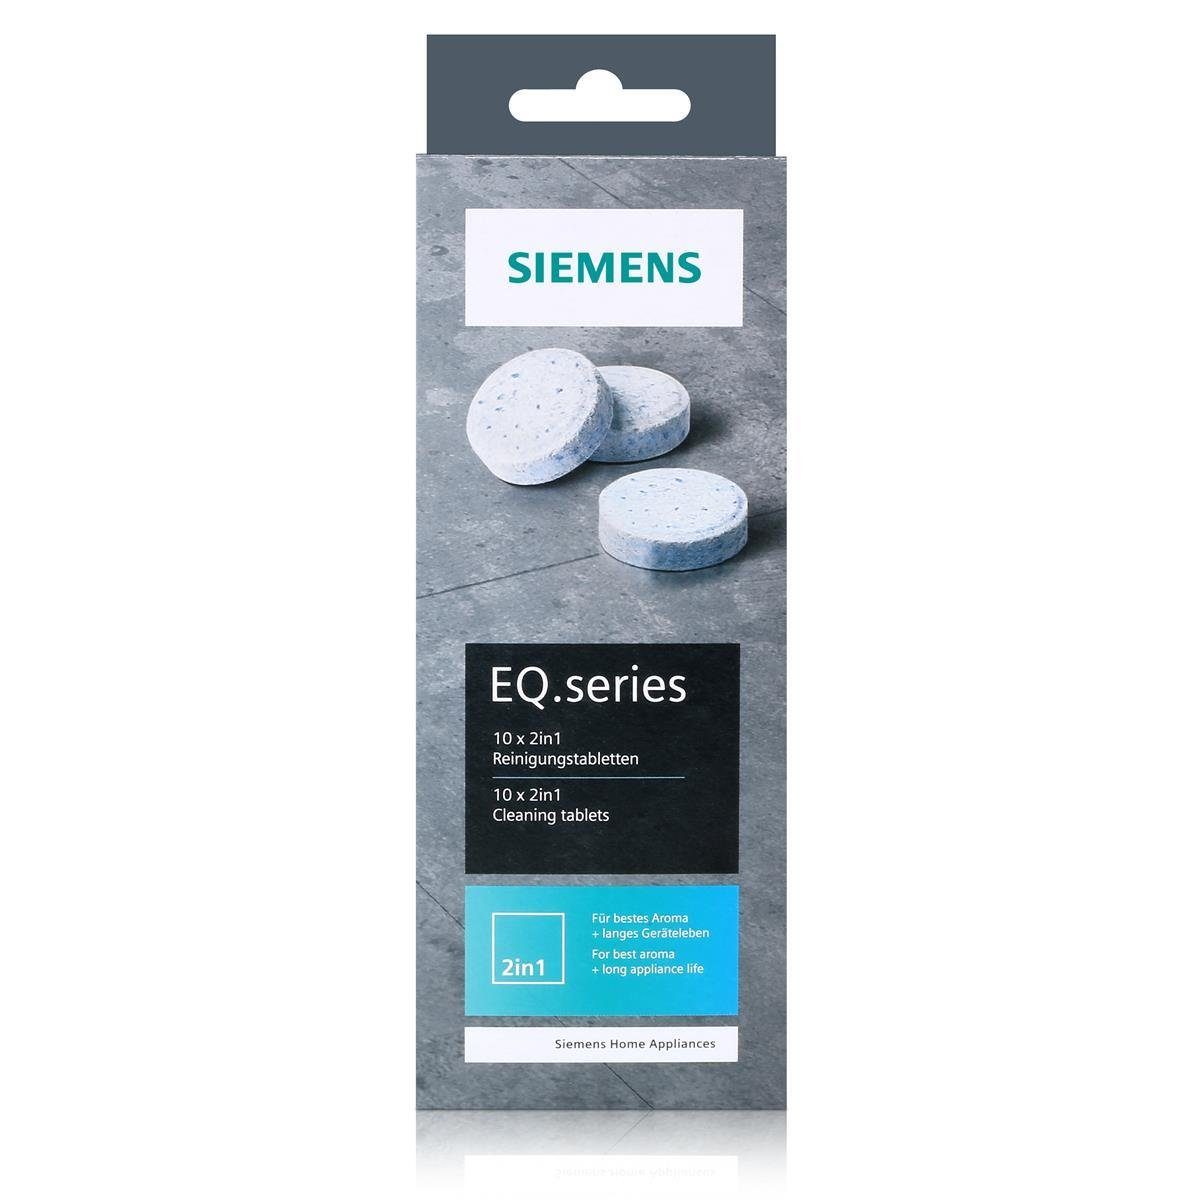 EQ.series TZ80001A SIEMENS - Reinigungstabletten 22g bestes Aroma Reinigungstabletten Siemens Für